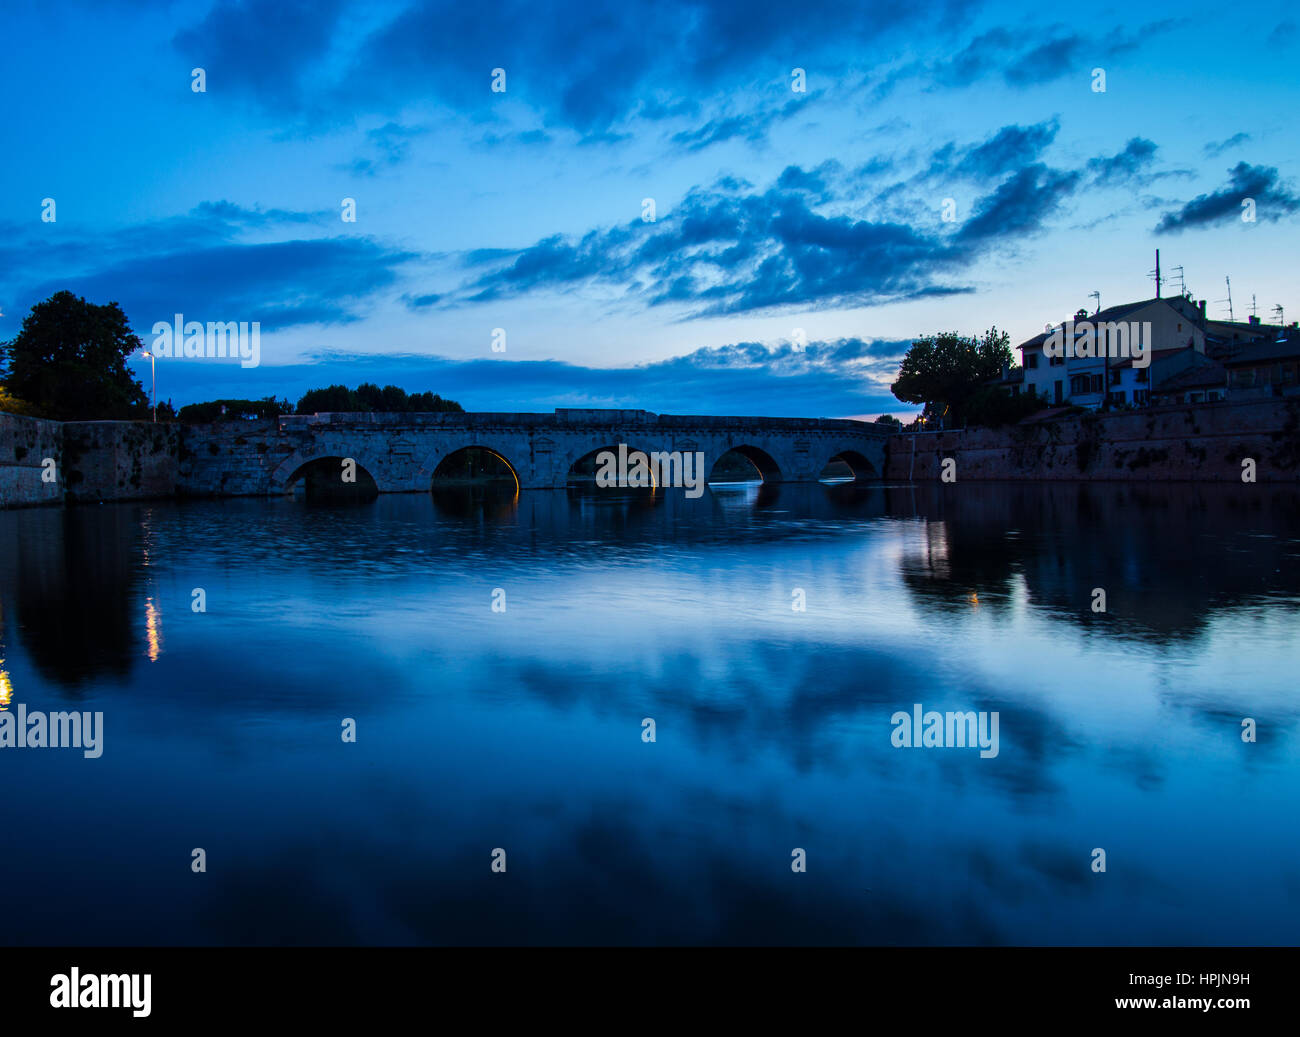 El Puente de Tiberio en Rimini al atardecer. Foto de stock